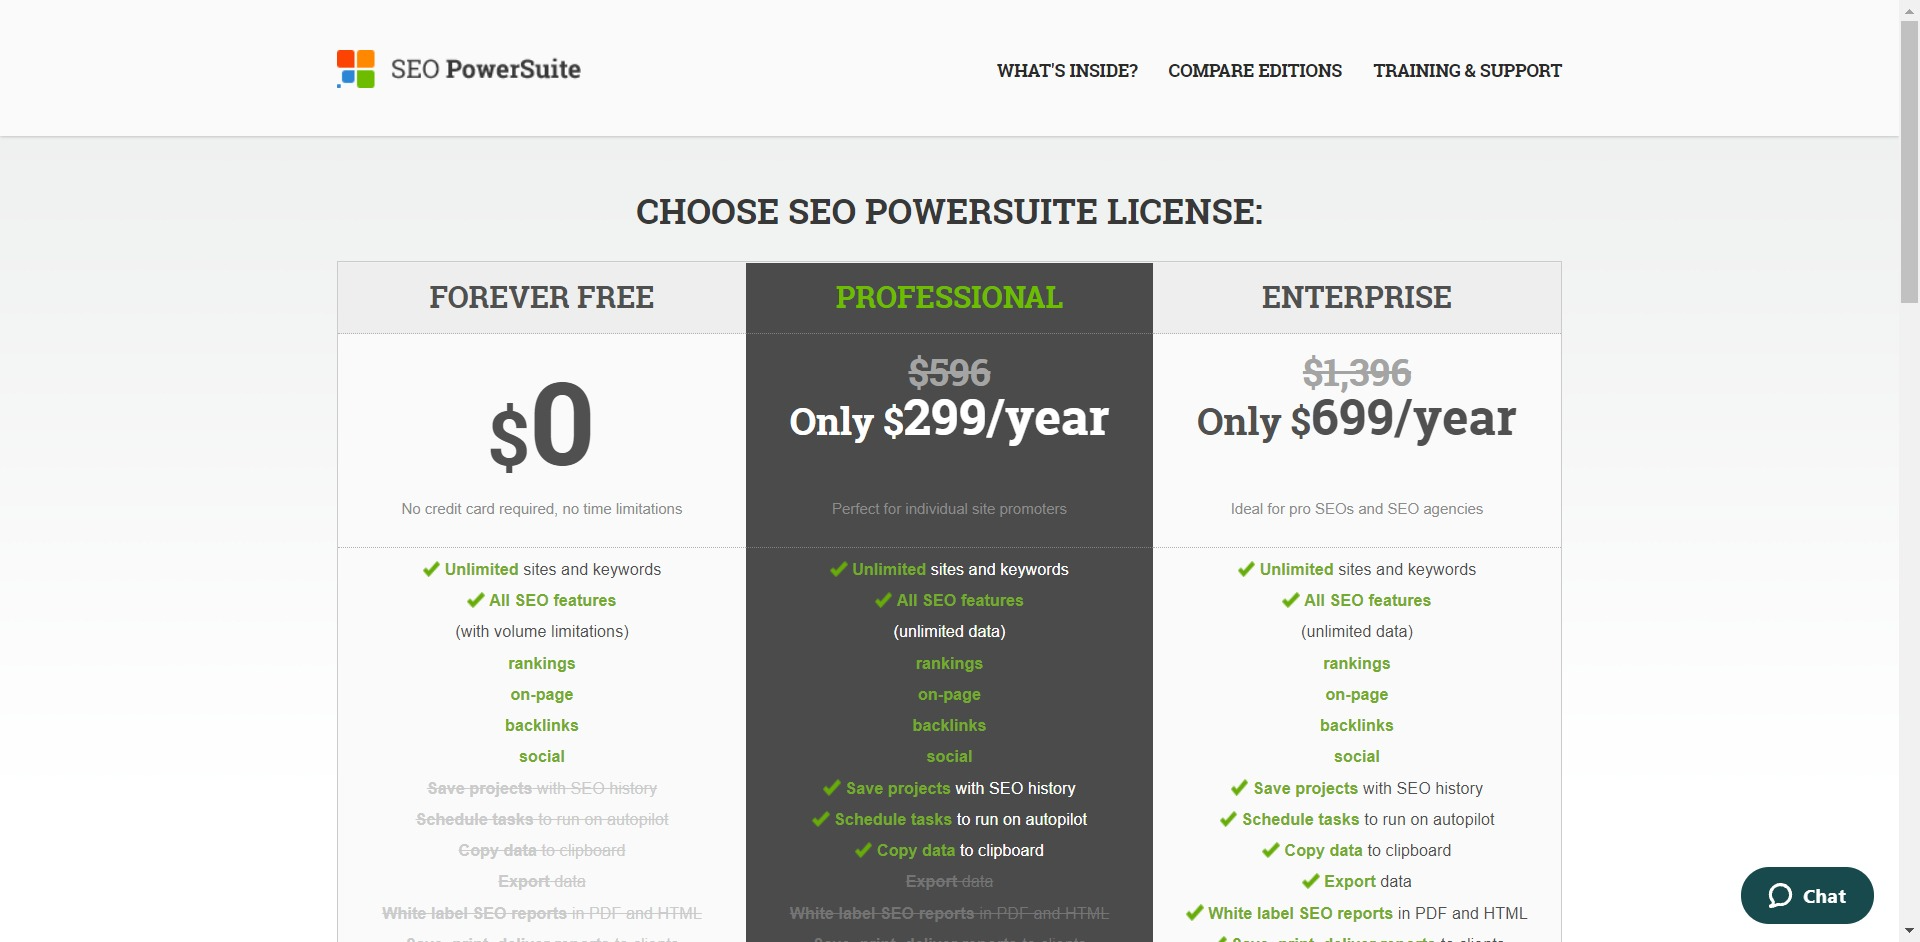 SEO PowerSuite pricing